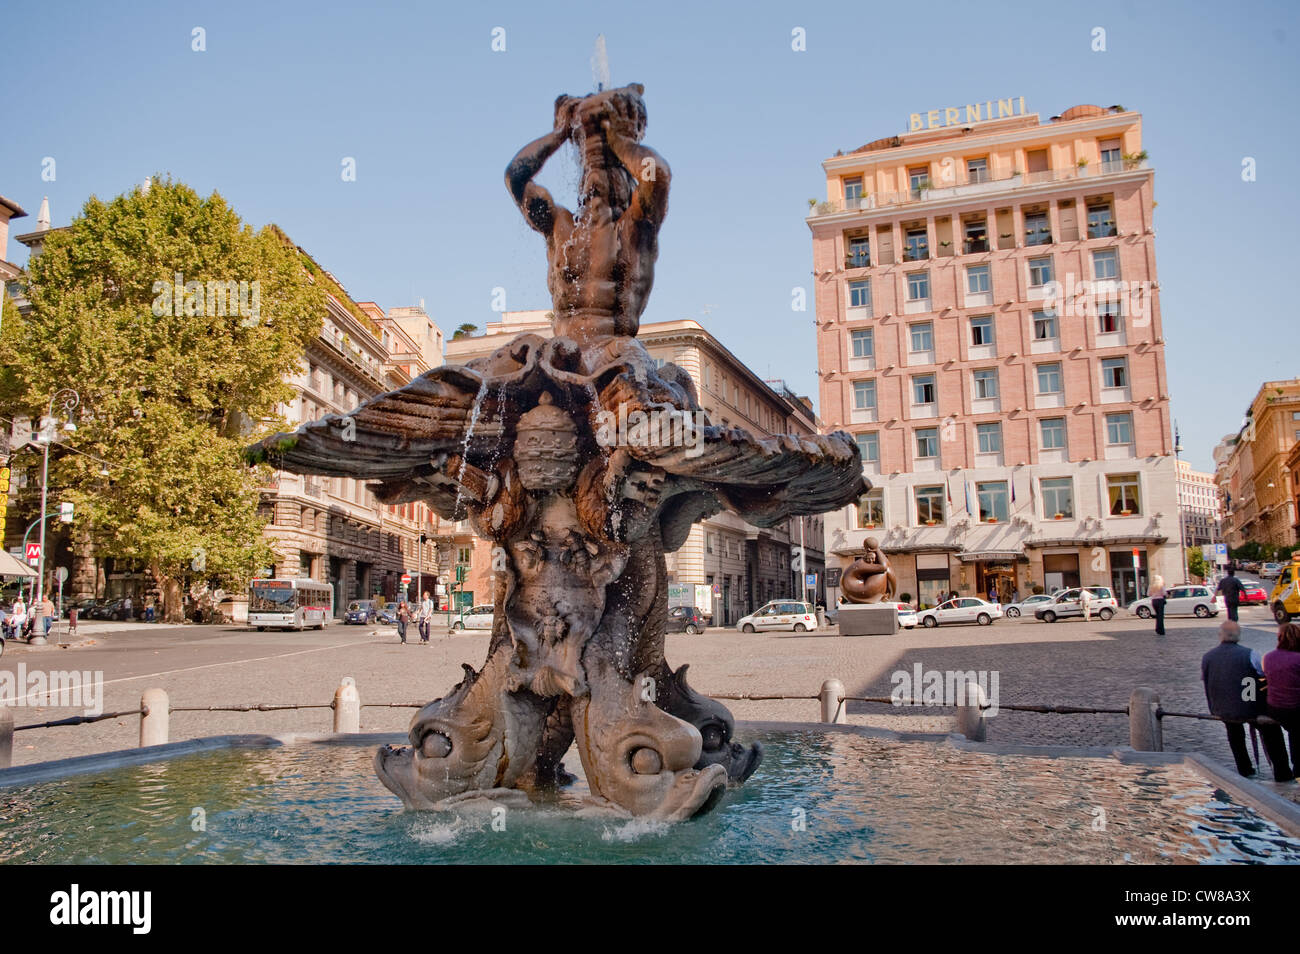 The Fontana del Tritone in Piazza Barberini in Rome, Italy. Stock Photo